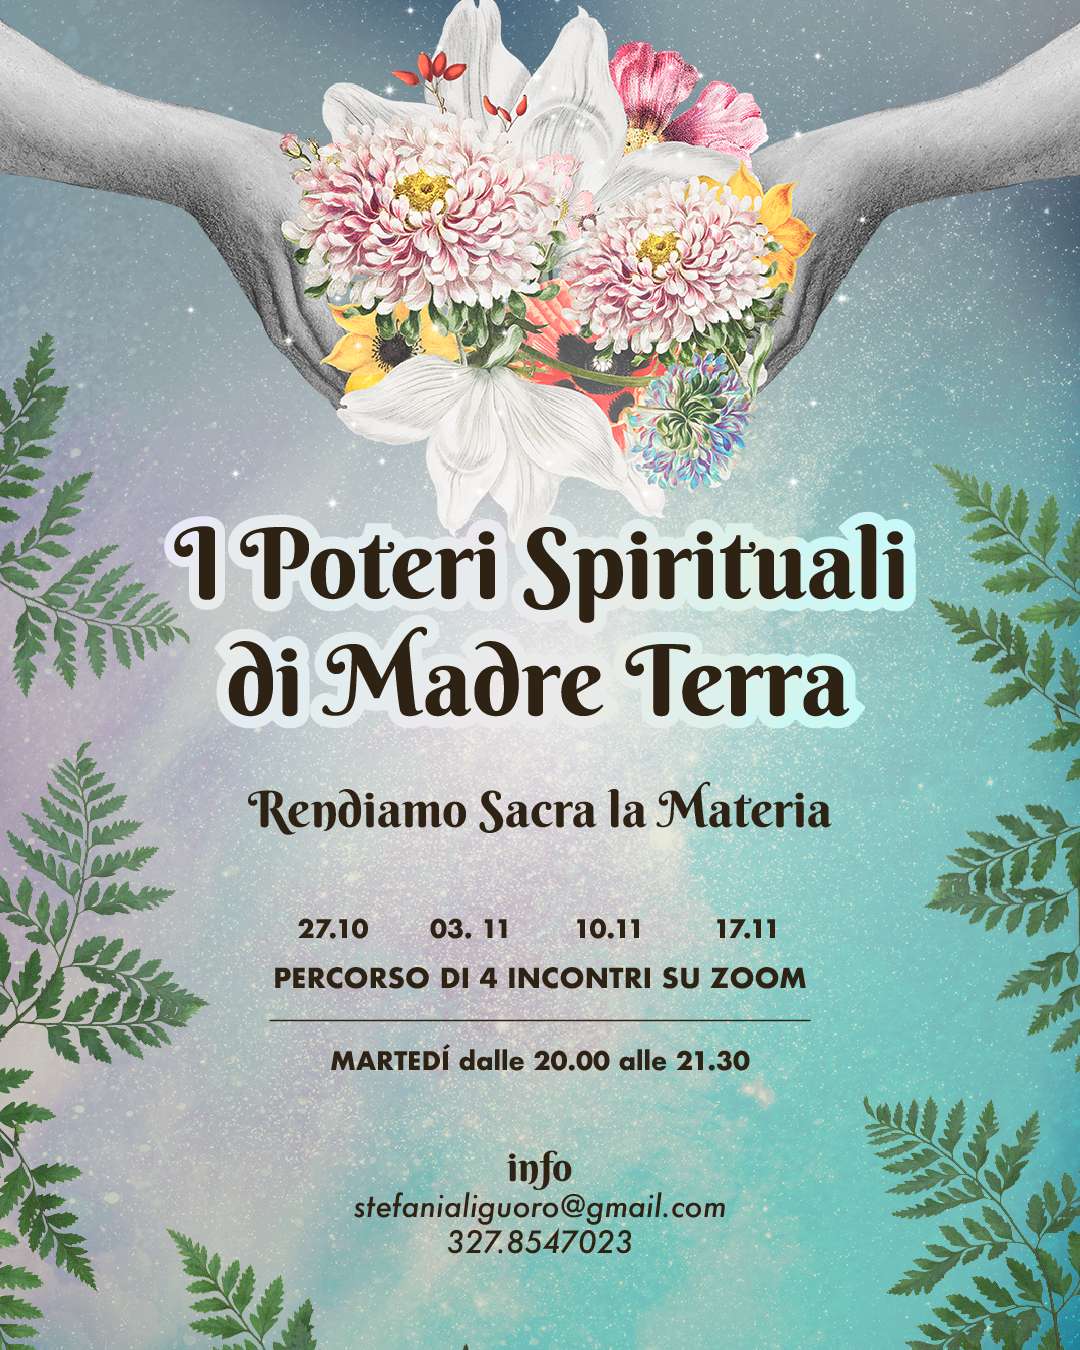 Il 27 ottobre parte il nuovo viaggio “I Poteri Spirituali di Madre Terra” 🗓